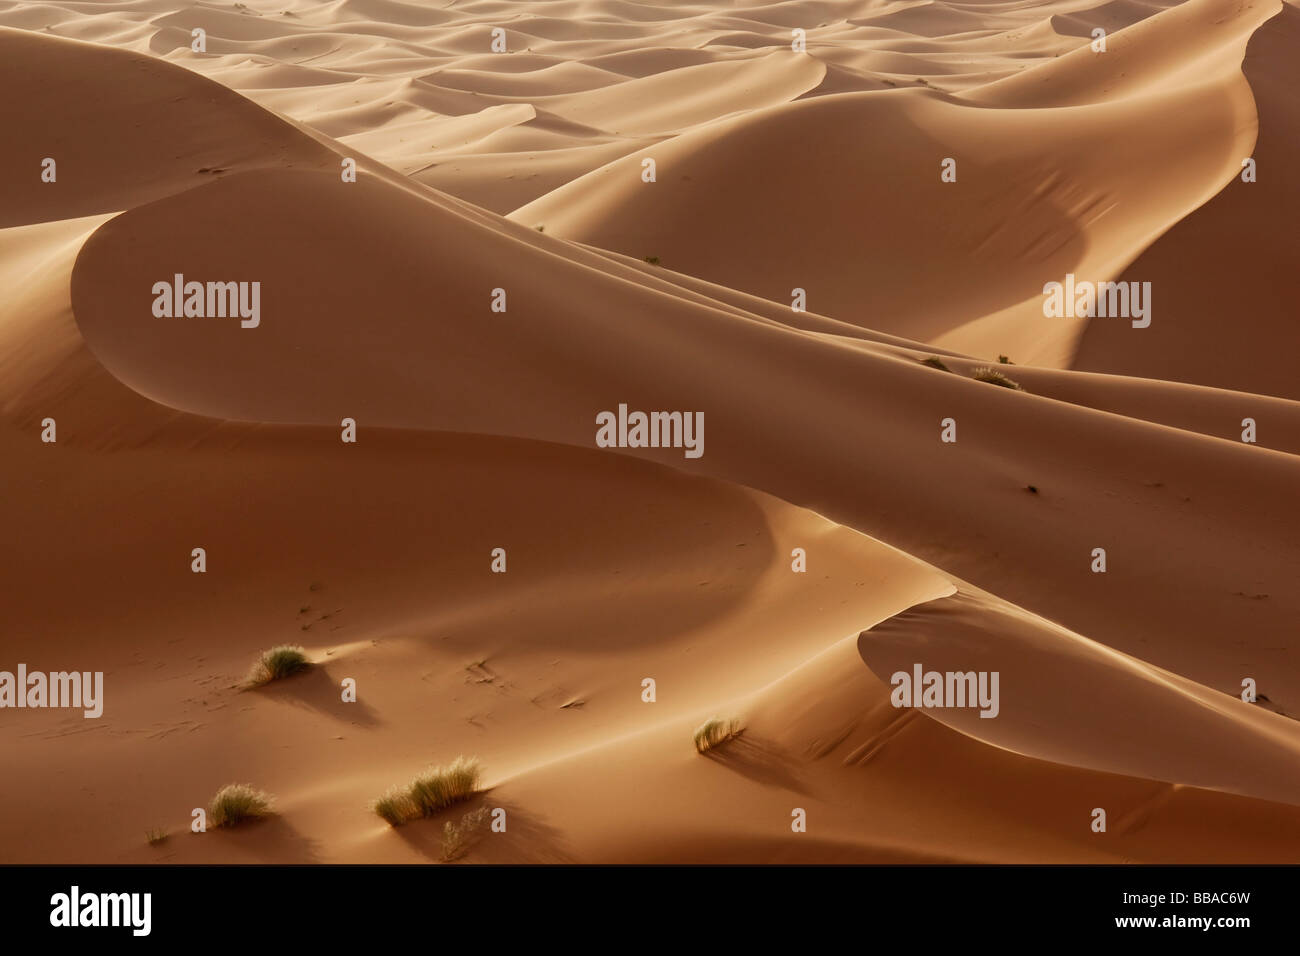 Hight sand dunes in the Sahara desert in evening light Stock Photo